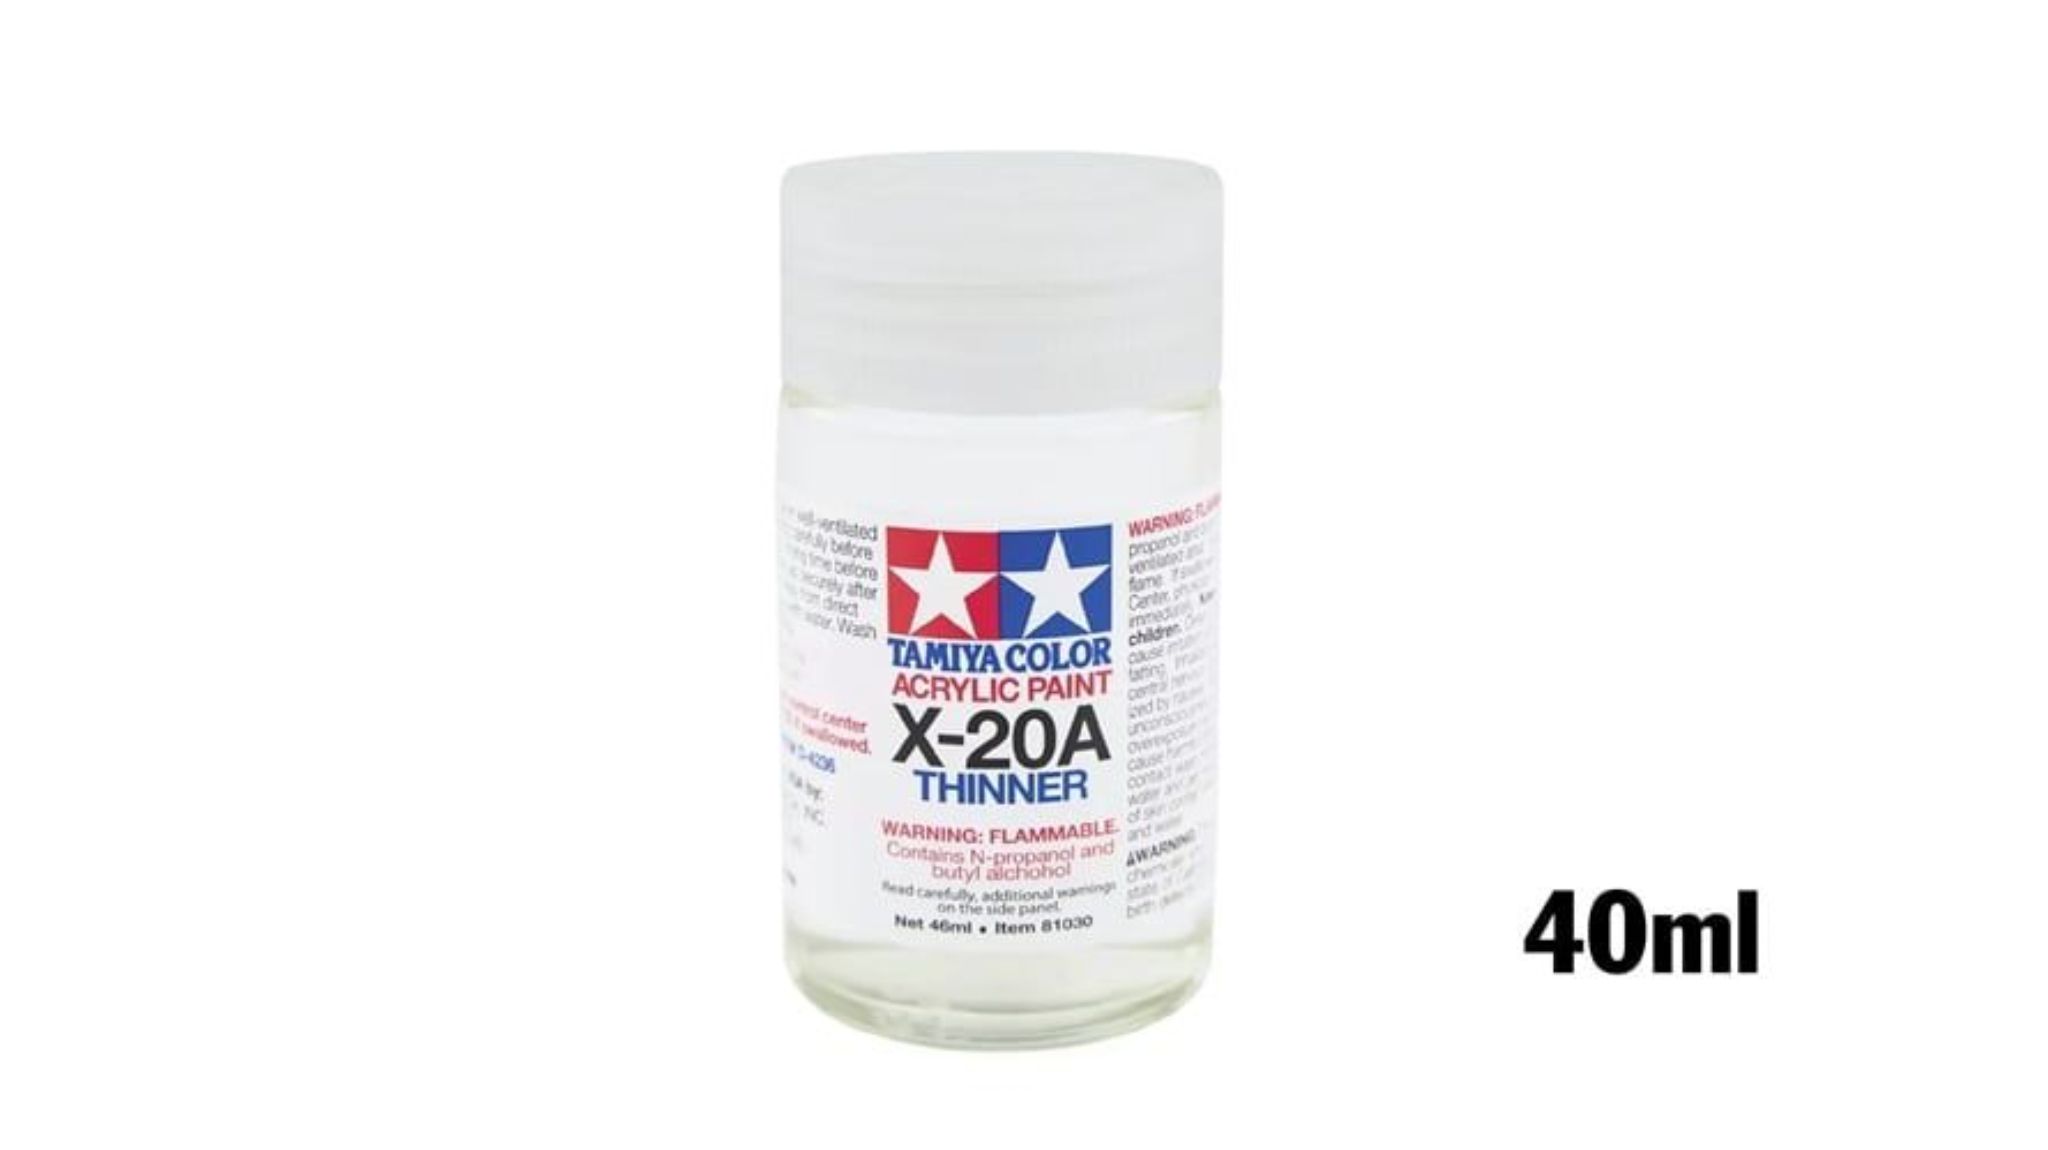  Acrylic x20a thinner dung dịch pha sơn thinner gốc acrylic 40ml Tamiya 81030 